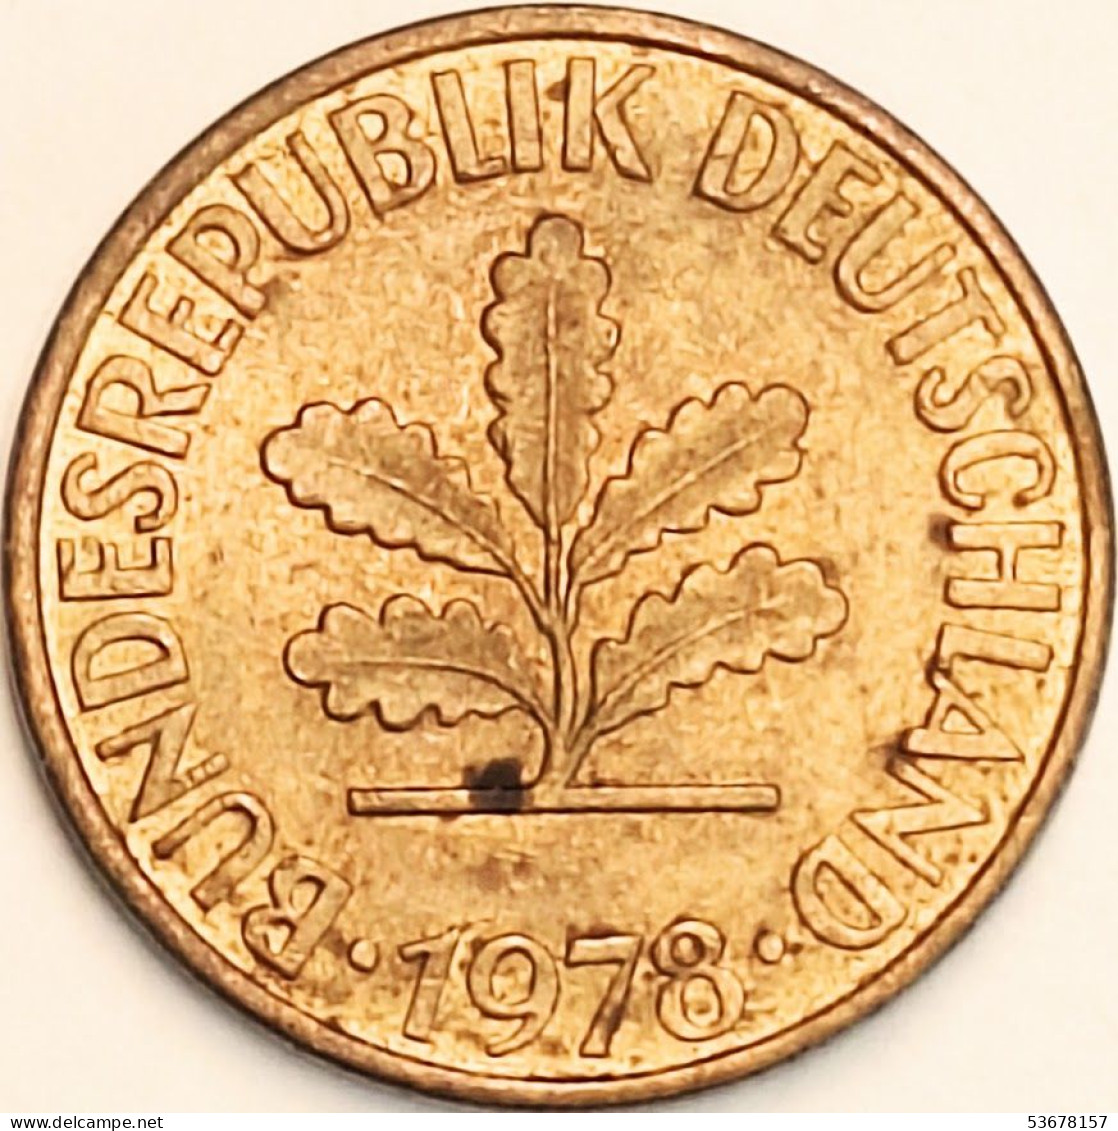 Germany Federal Republic - 10 Pfennig 1978 G, KM# 108 (#4661) - 10 Pfennig